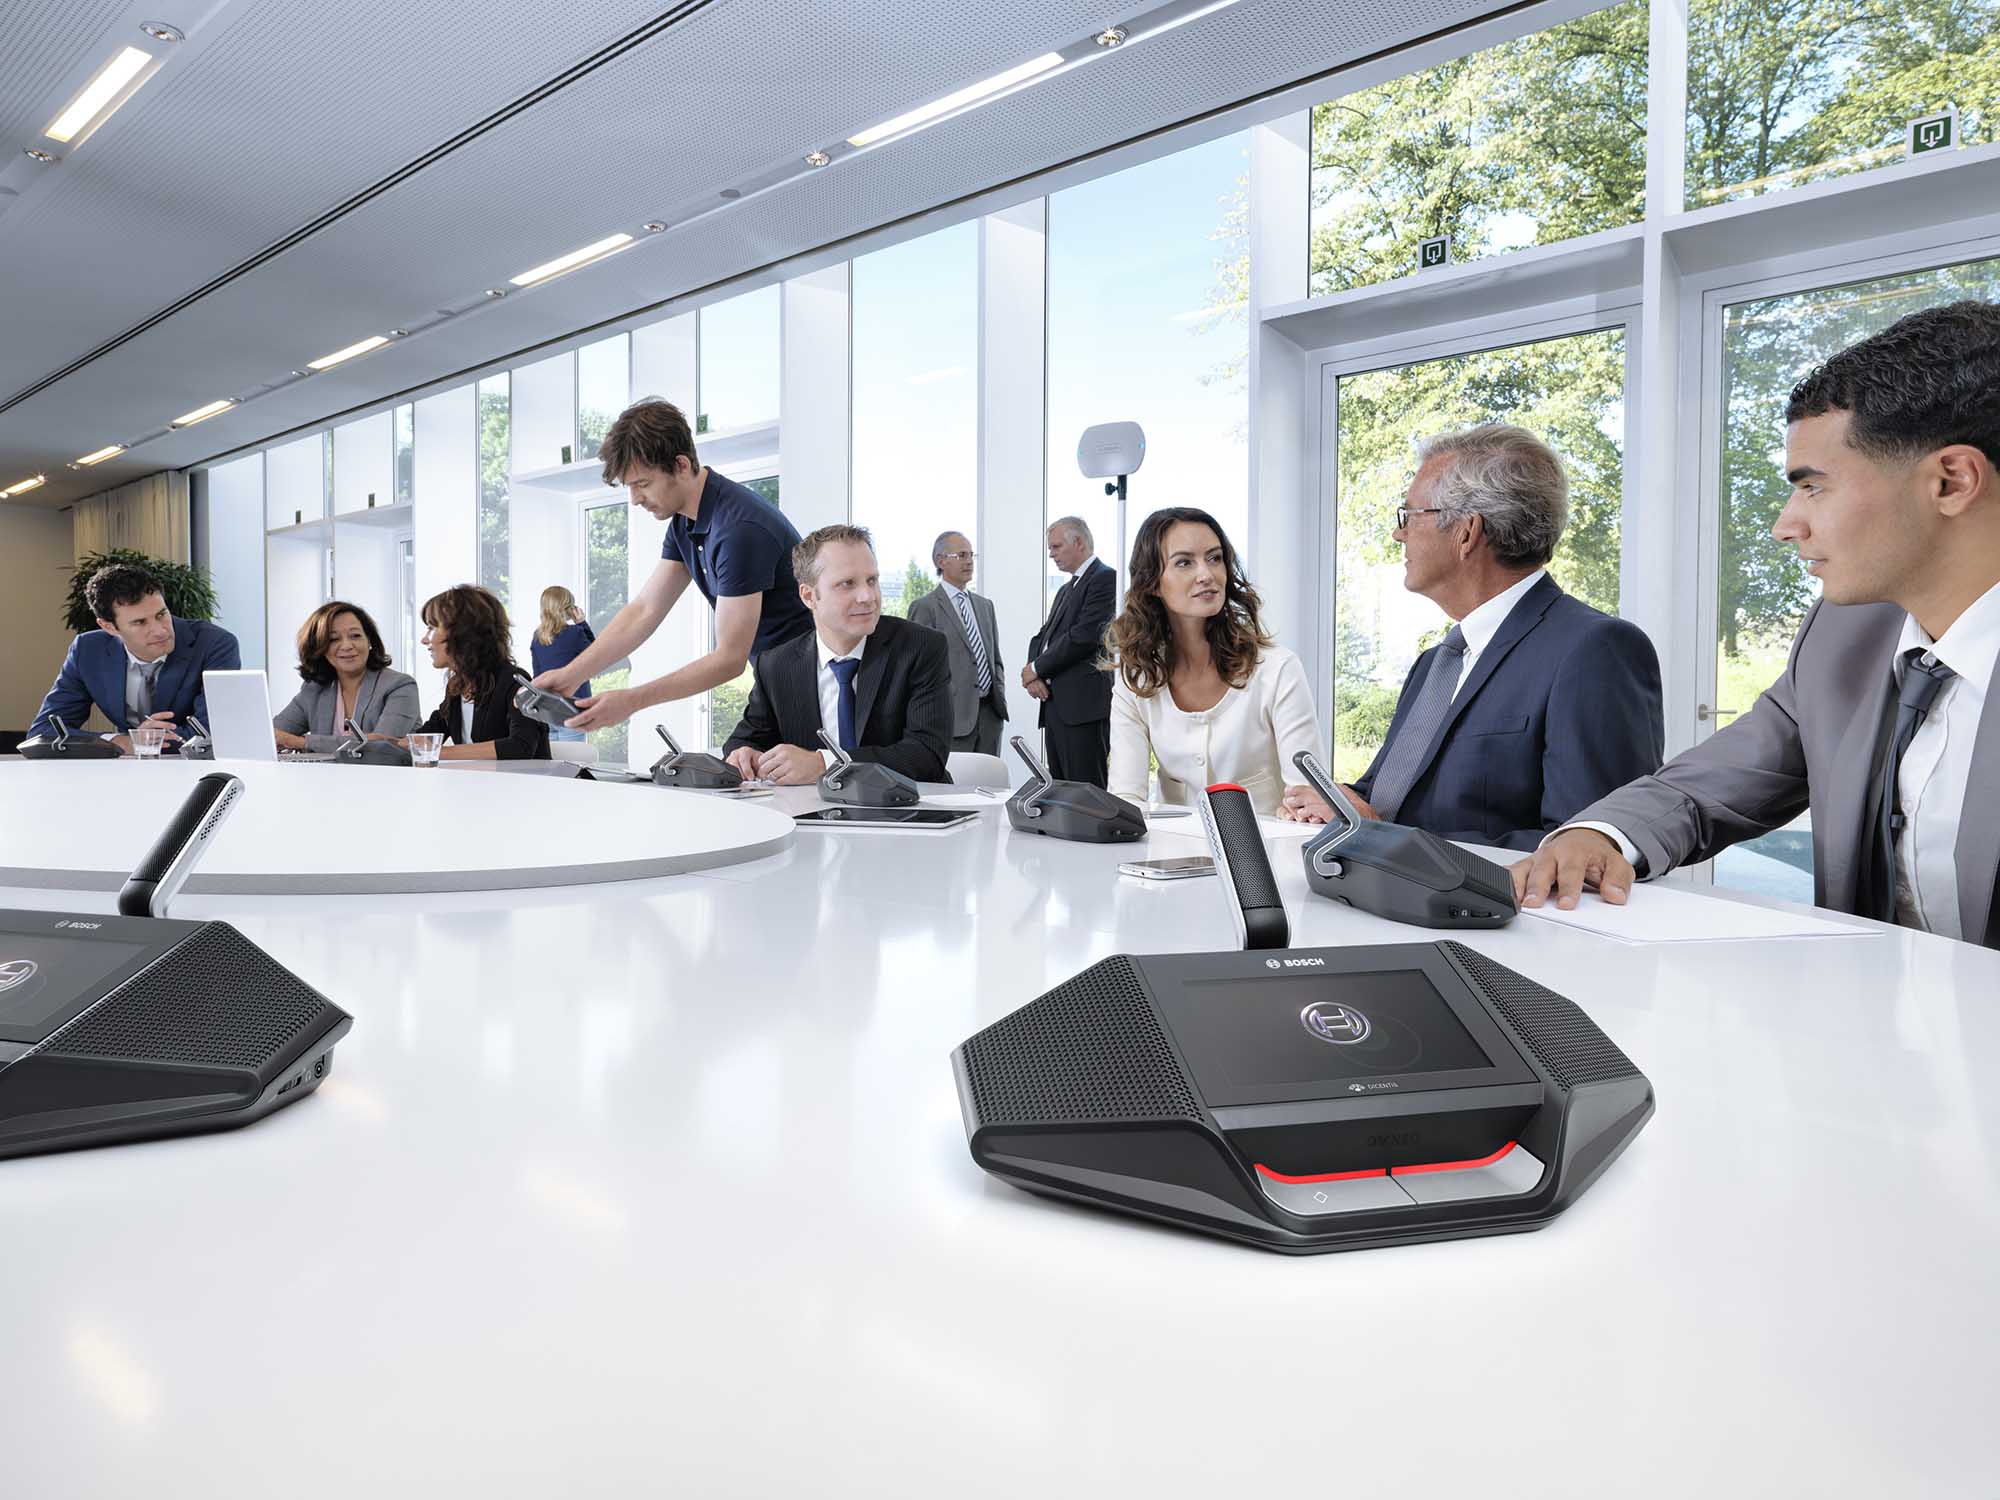 Bosch triển khai dịch vụ “Trải nghiệm hệ thống Hội nghị Dicentis Không dây” hoàn toàn miễn phí cho doanh nghiệp